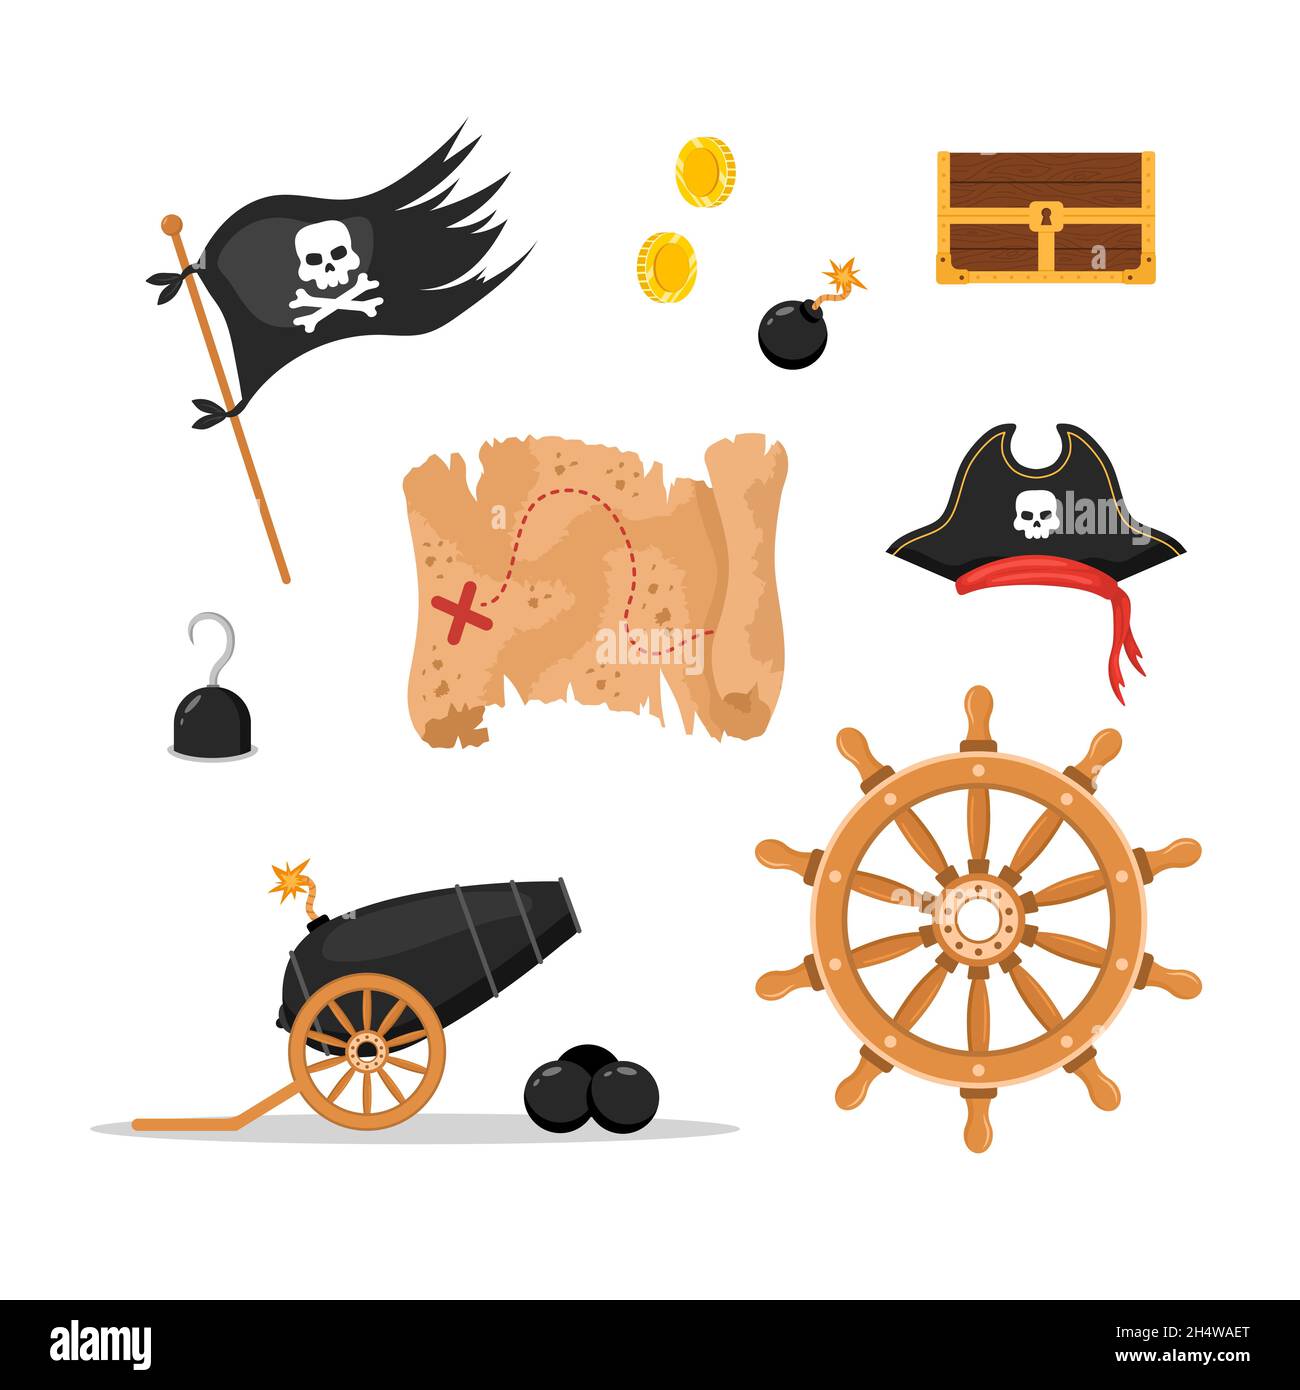 Ein Paket von Piratenartikeln. Schiffsrad, Flagge, Hut, Karte, Anker, Kompass, Schatzkiste. Pirateriesammlung auf weißem Hintergrund isoliert. Kindlicher Vektor Stock Vektor